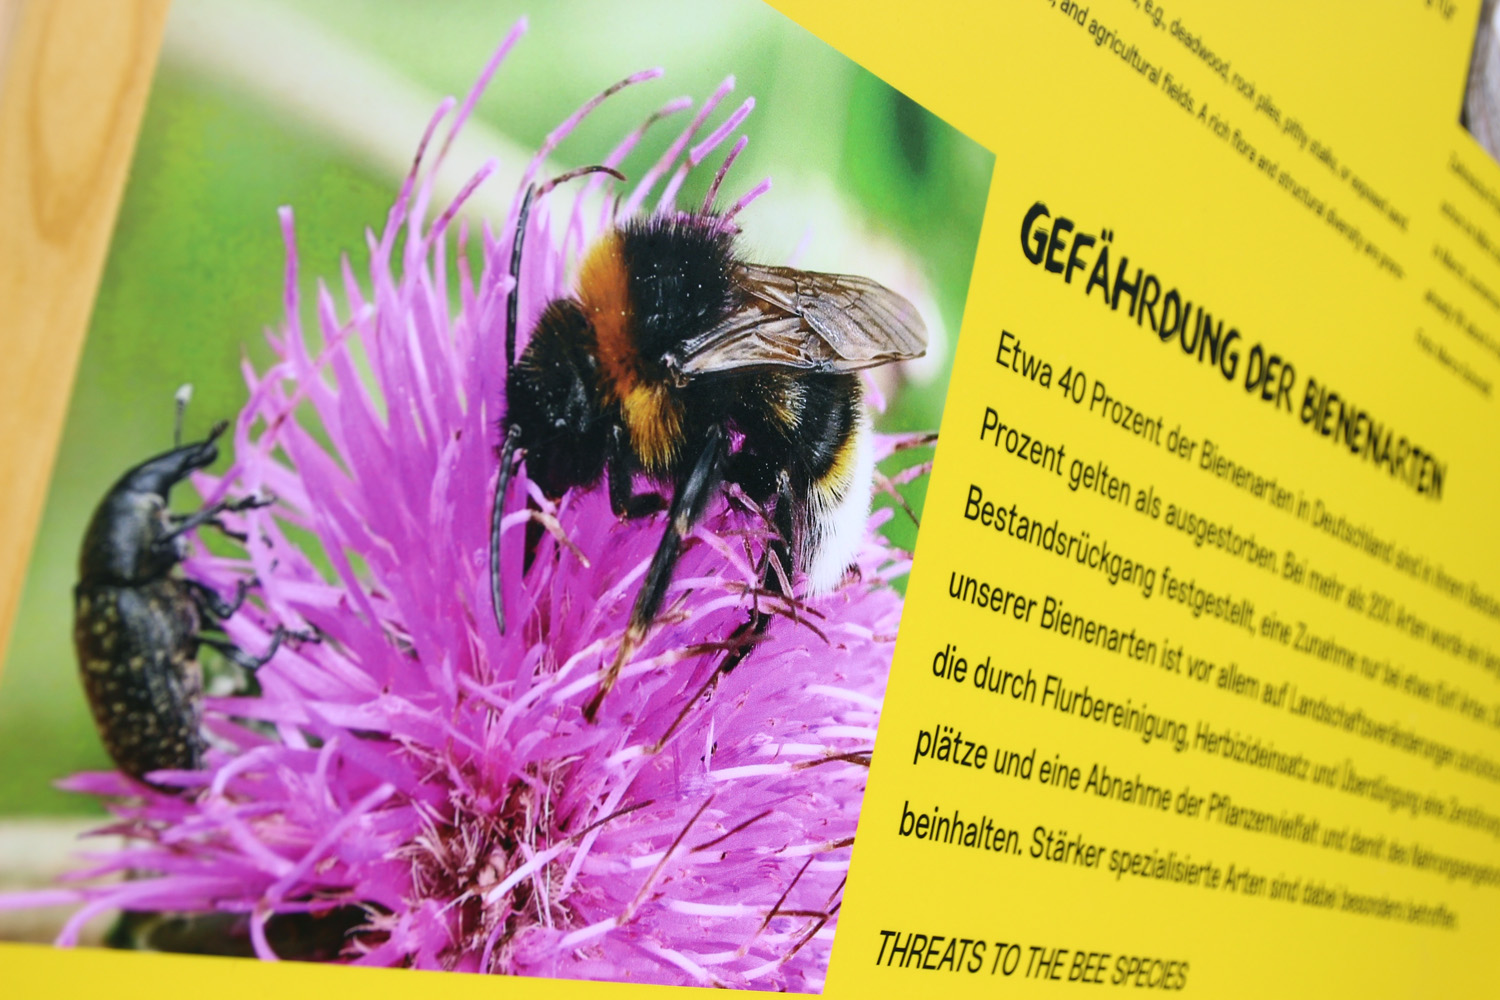 Auf einer gelben Informationstafel ist ein Bild von einer Biene zu sehen, die eine magentafarbene Blume bestäubt. Auf der linken Seite ist ein schwarzes Insekt zu sehen, welches eine Bedrohung für Bienen darstellt.